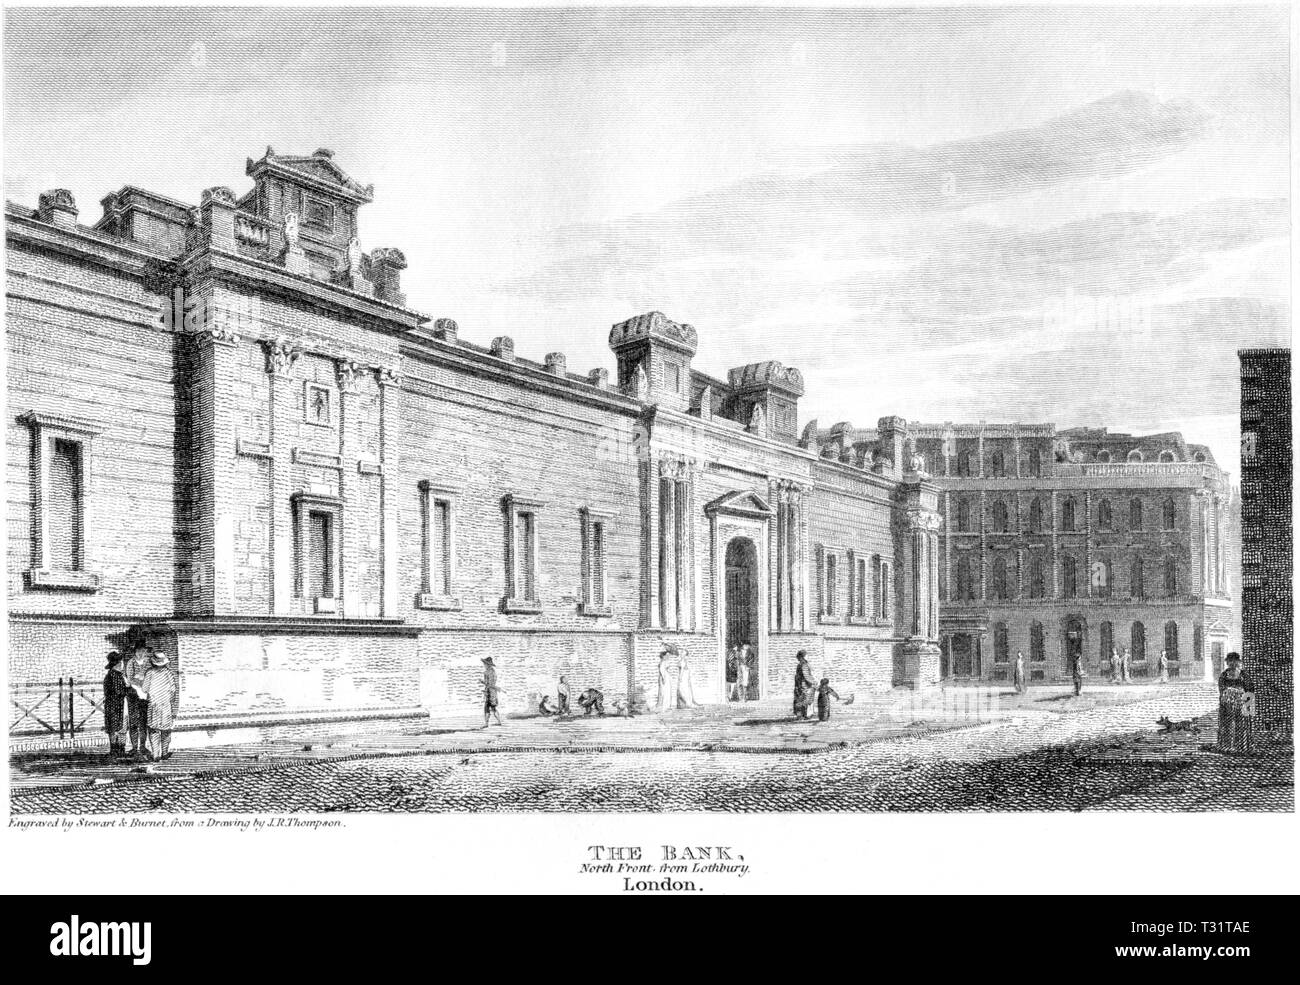 Eine Gravur der Bank,Vorne von Lothbury, London UK gescannt und in hoher Auflösung aus einem Buch 1814 veröffentlicht. Glaubten copyright frei. Stockfoto